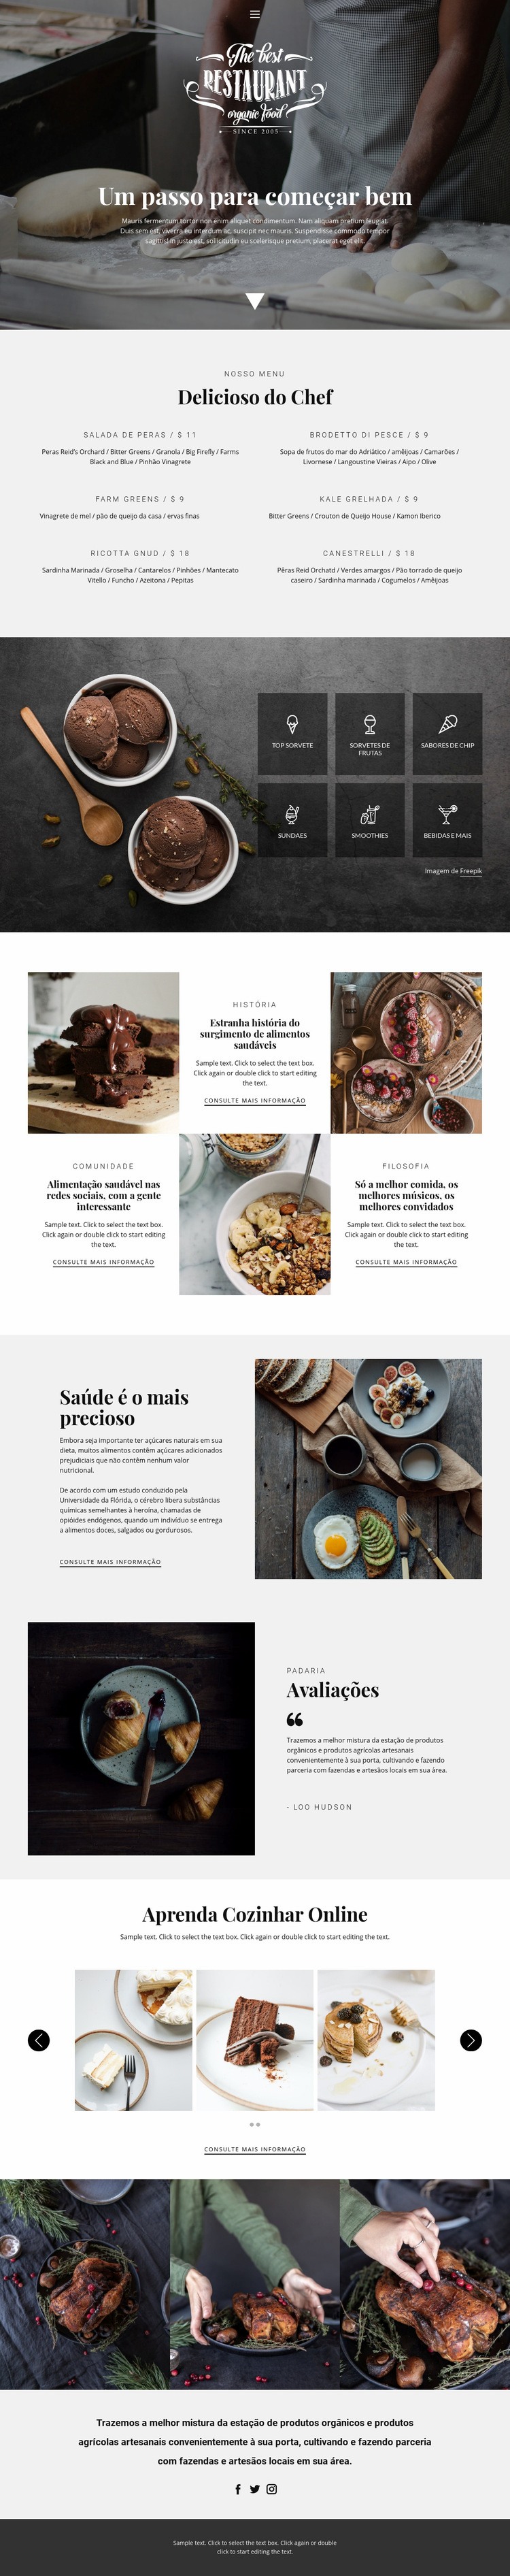 Receitas e aulas de culinária Maquete do site